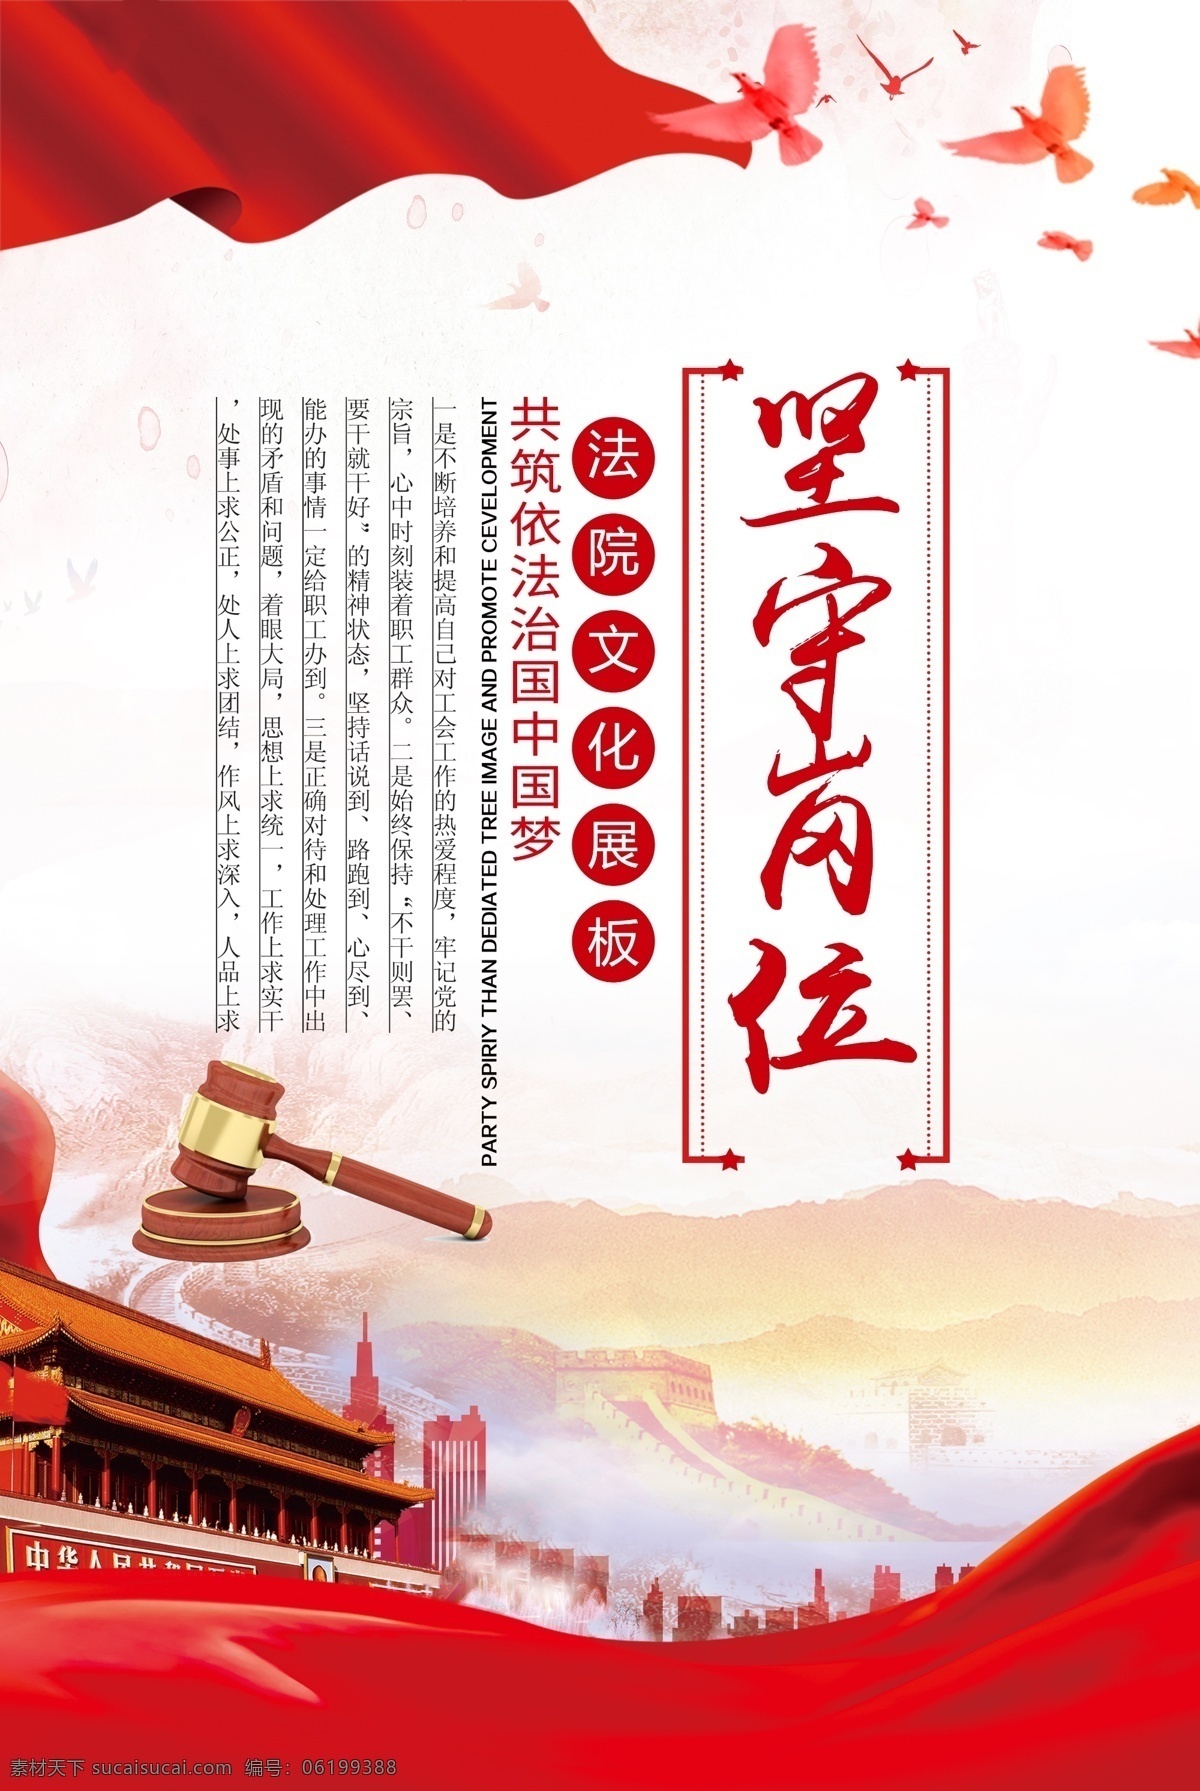 中国 梦 坚守 岗位 坚守岗位 红色海报 廉政文化 党建展板